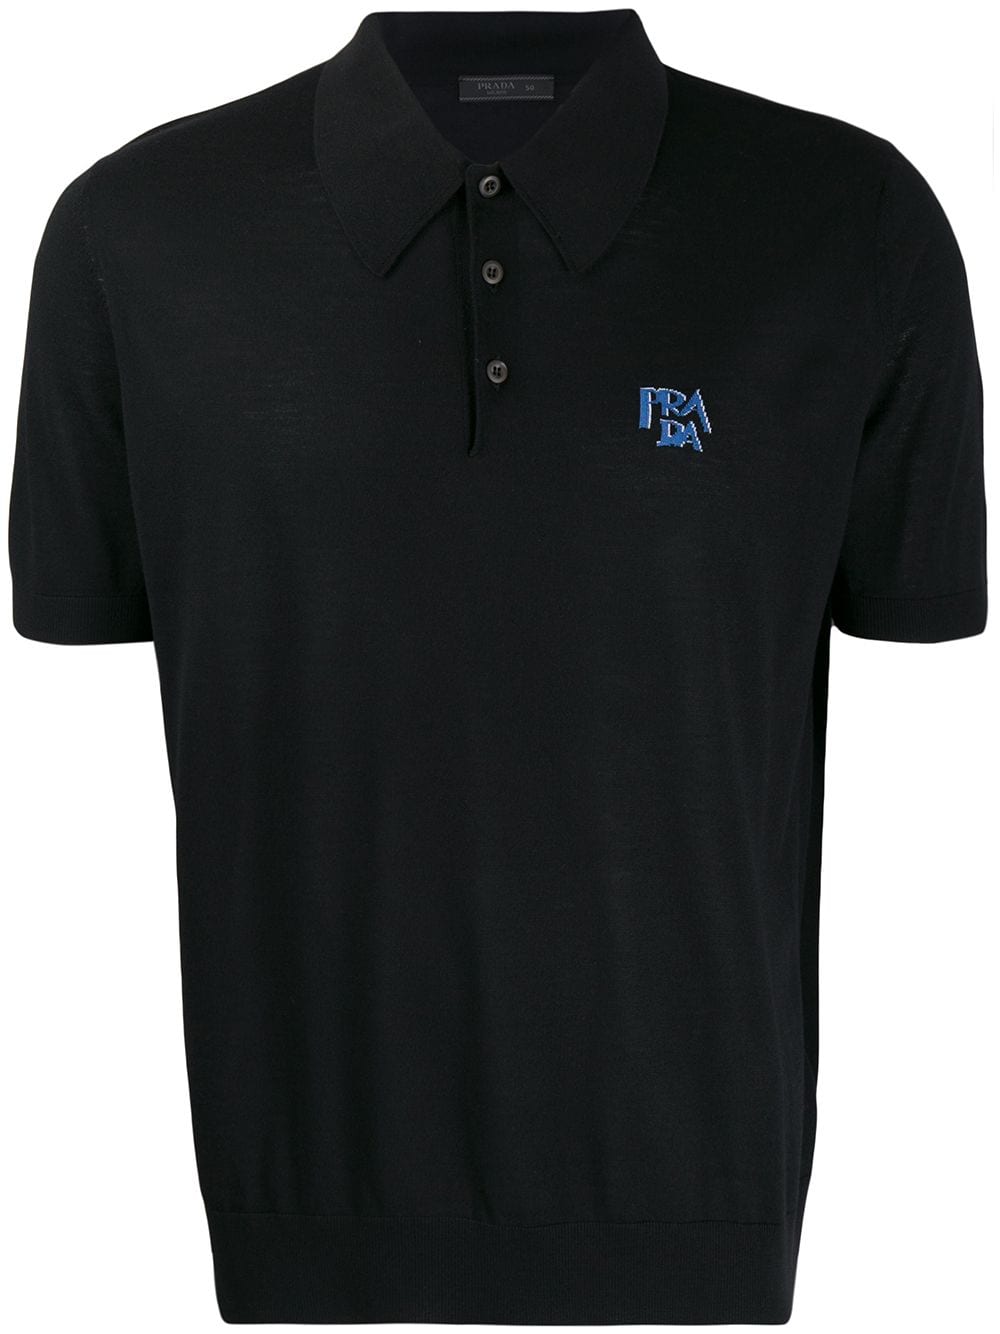 Prada logo polo shirt - Black von Prada